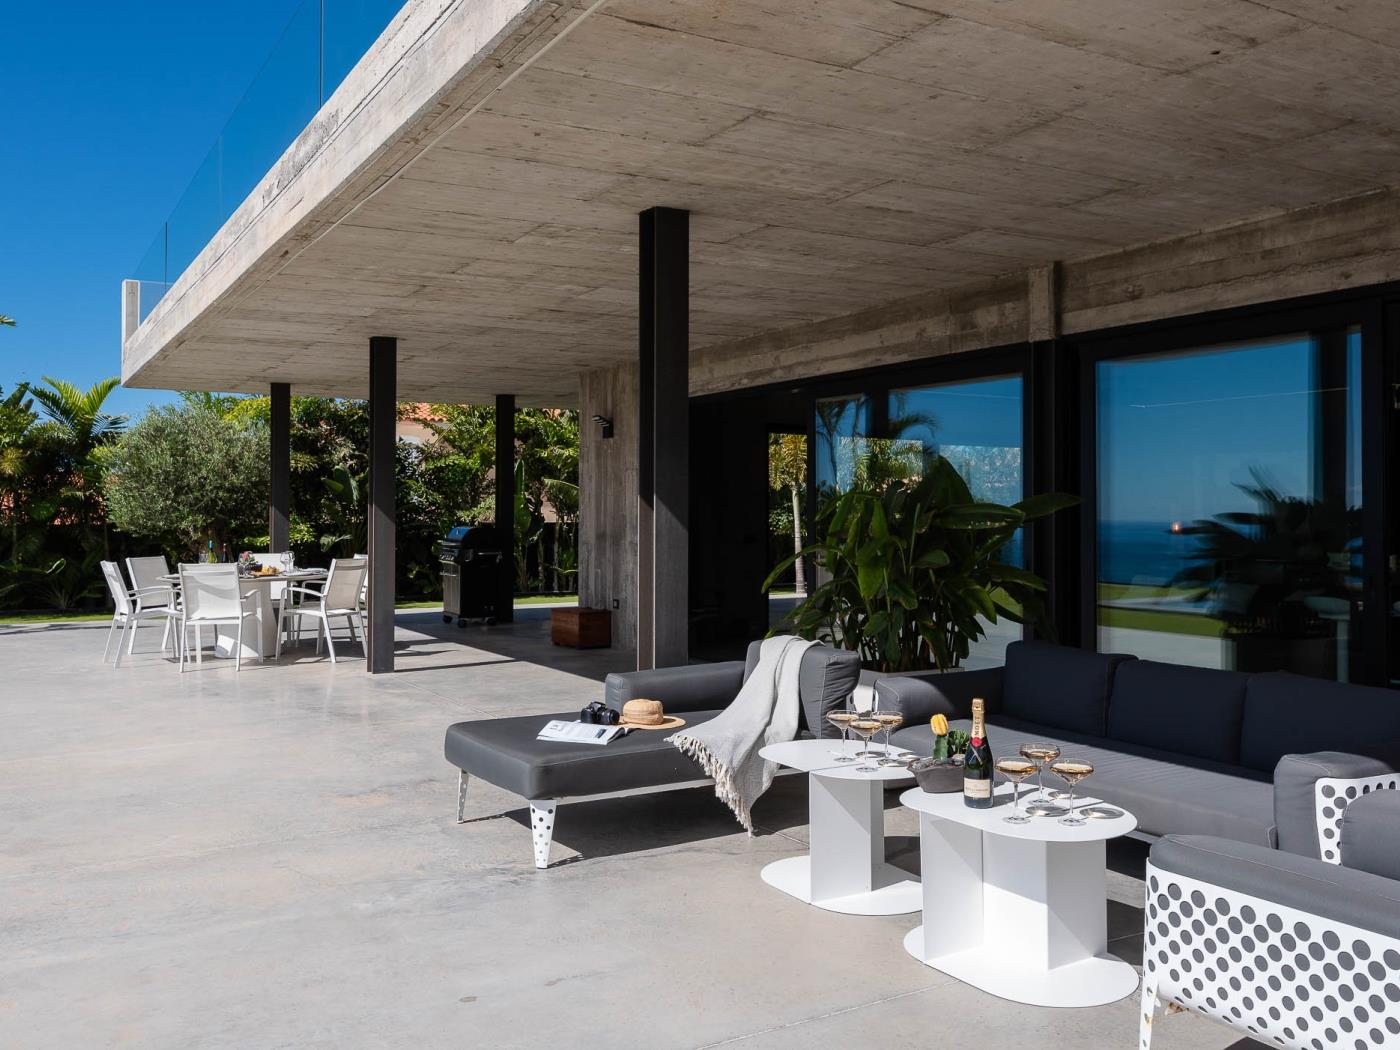 KARAT Villa Atelier de la Vega in Playa Paraiso